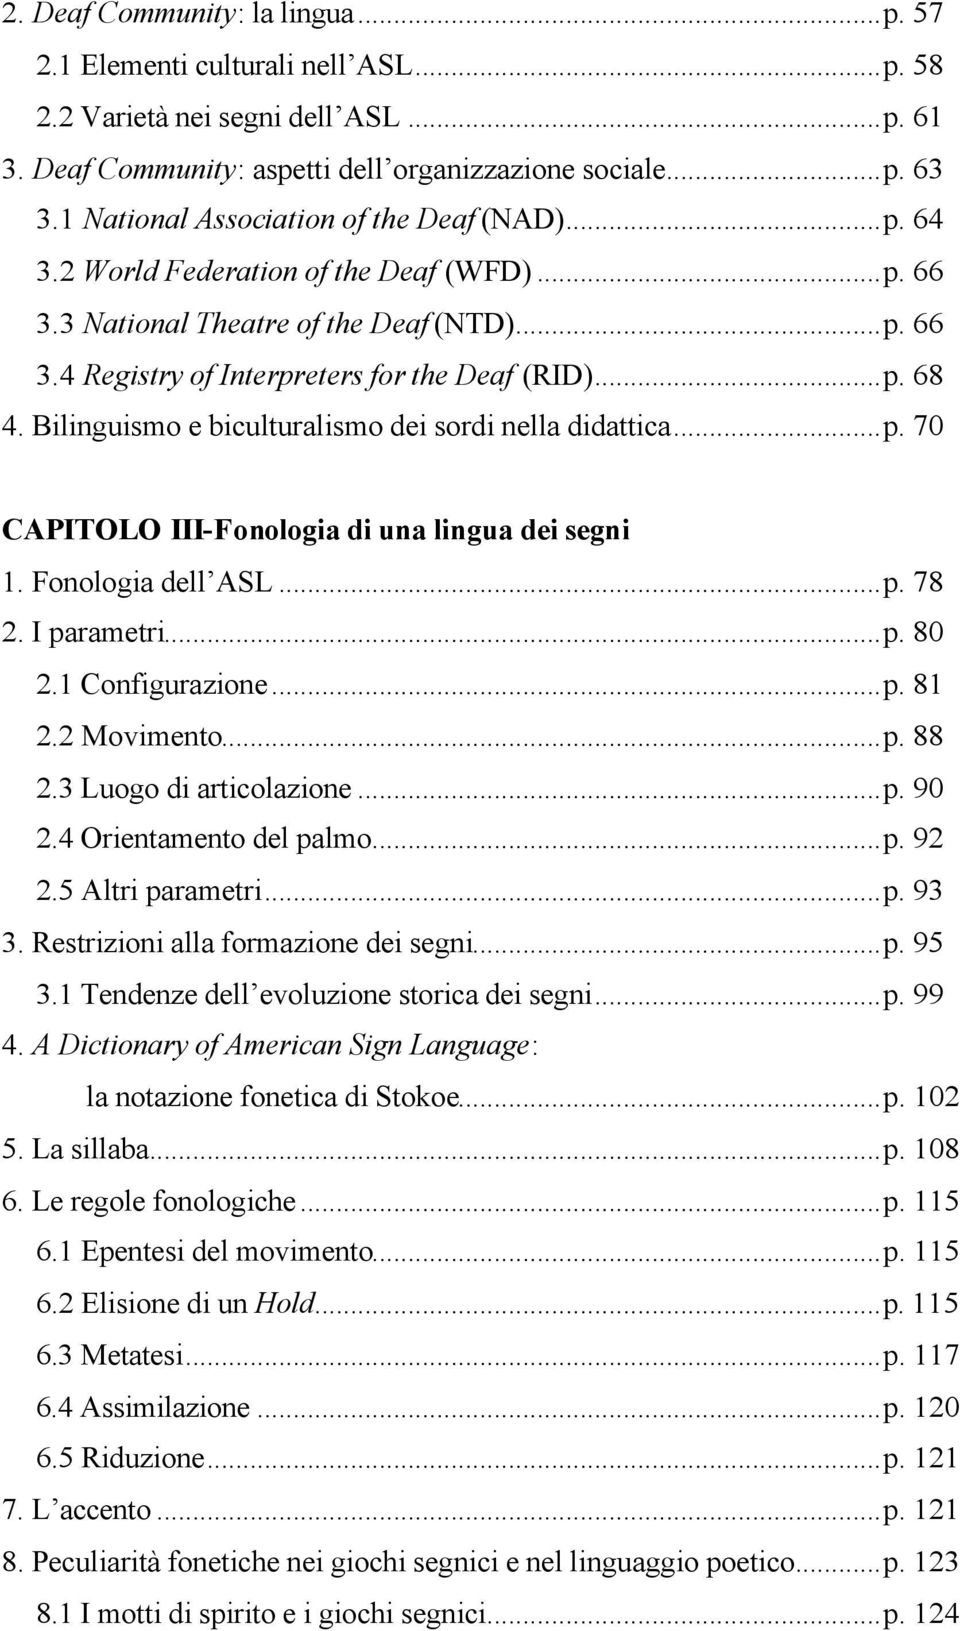 Bilinguismo e biculturalismo dei sordi nella didattica...p. 70 CAPITOLO III-Fonologia di una lingua dei segni 1. Fonologia dell ASL...p. 78 2. I parametri...p. 80 2.1 Configurazione...p. 81 2.